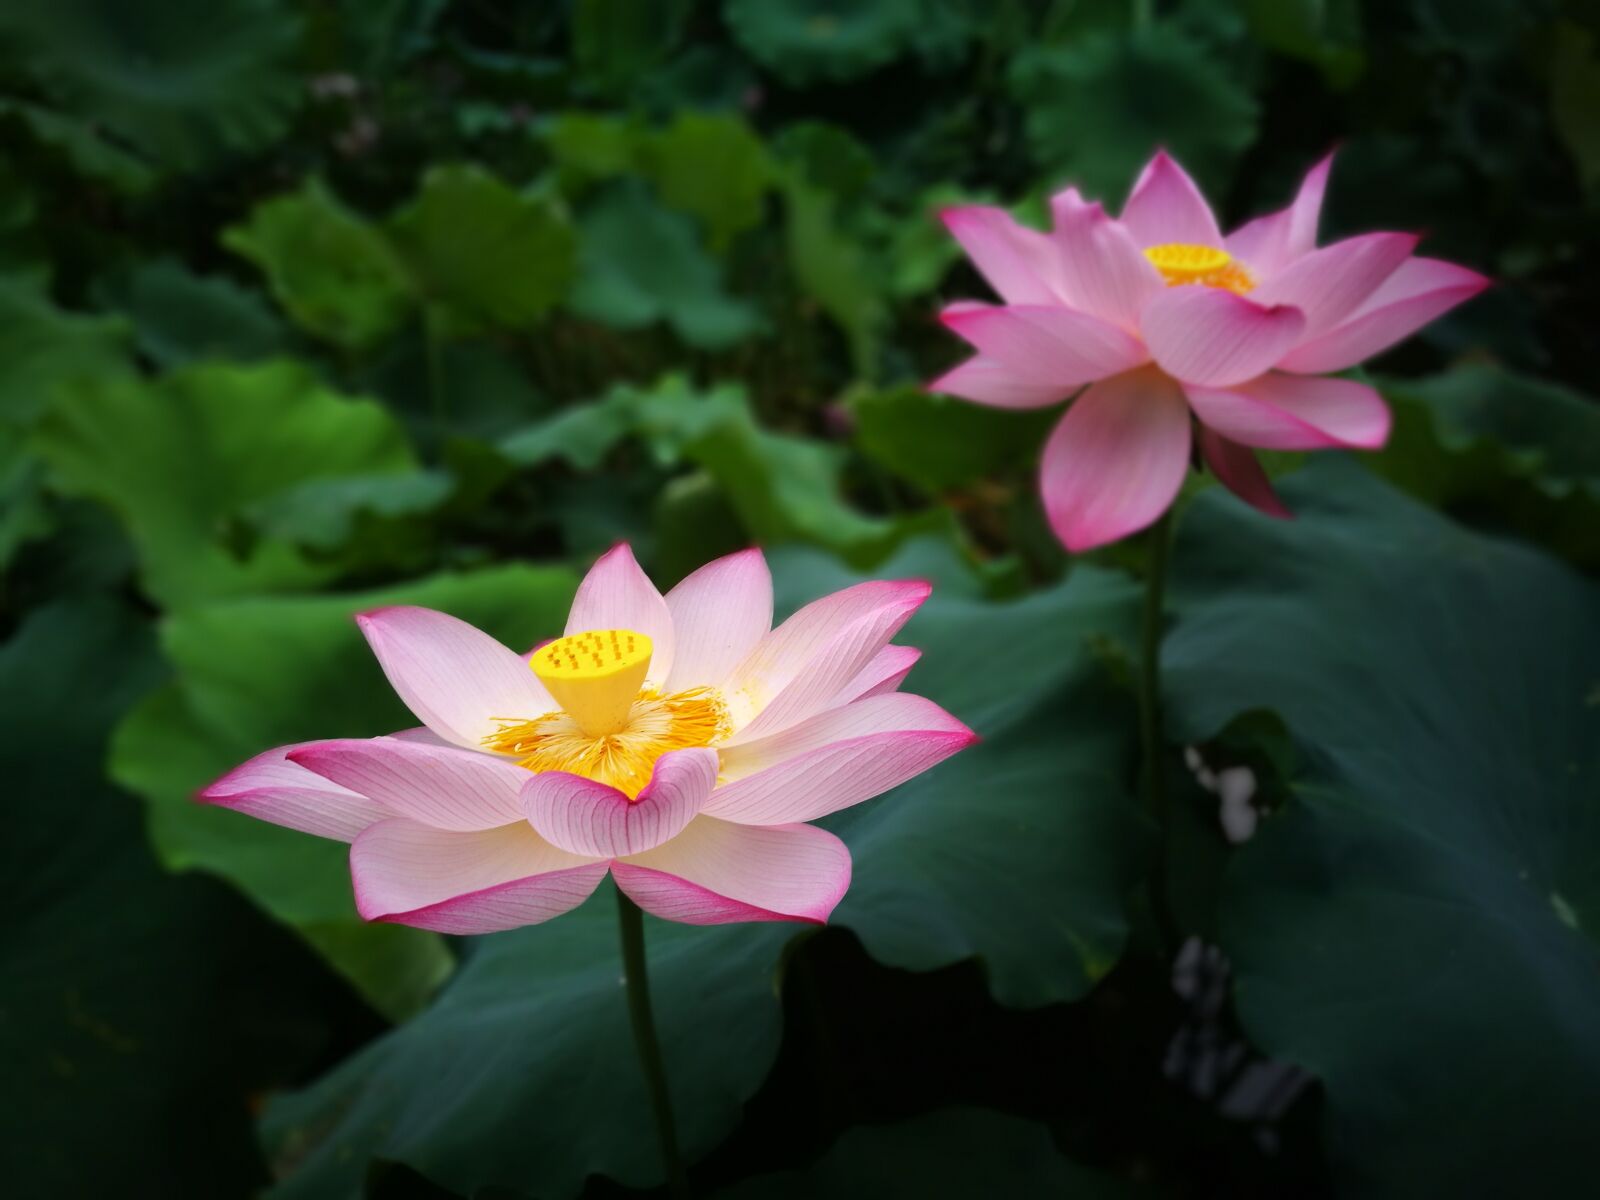 HUAWEI P9 Plus sample photo. Lotus, flower, lotus leaf photography